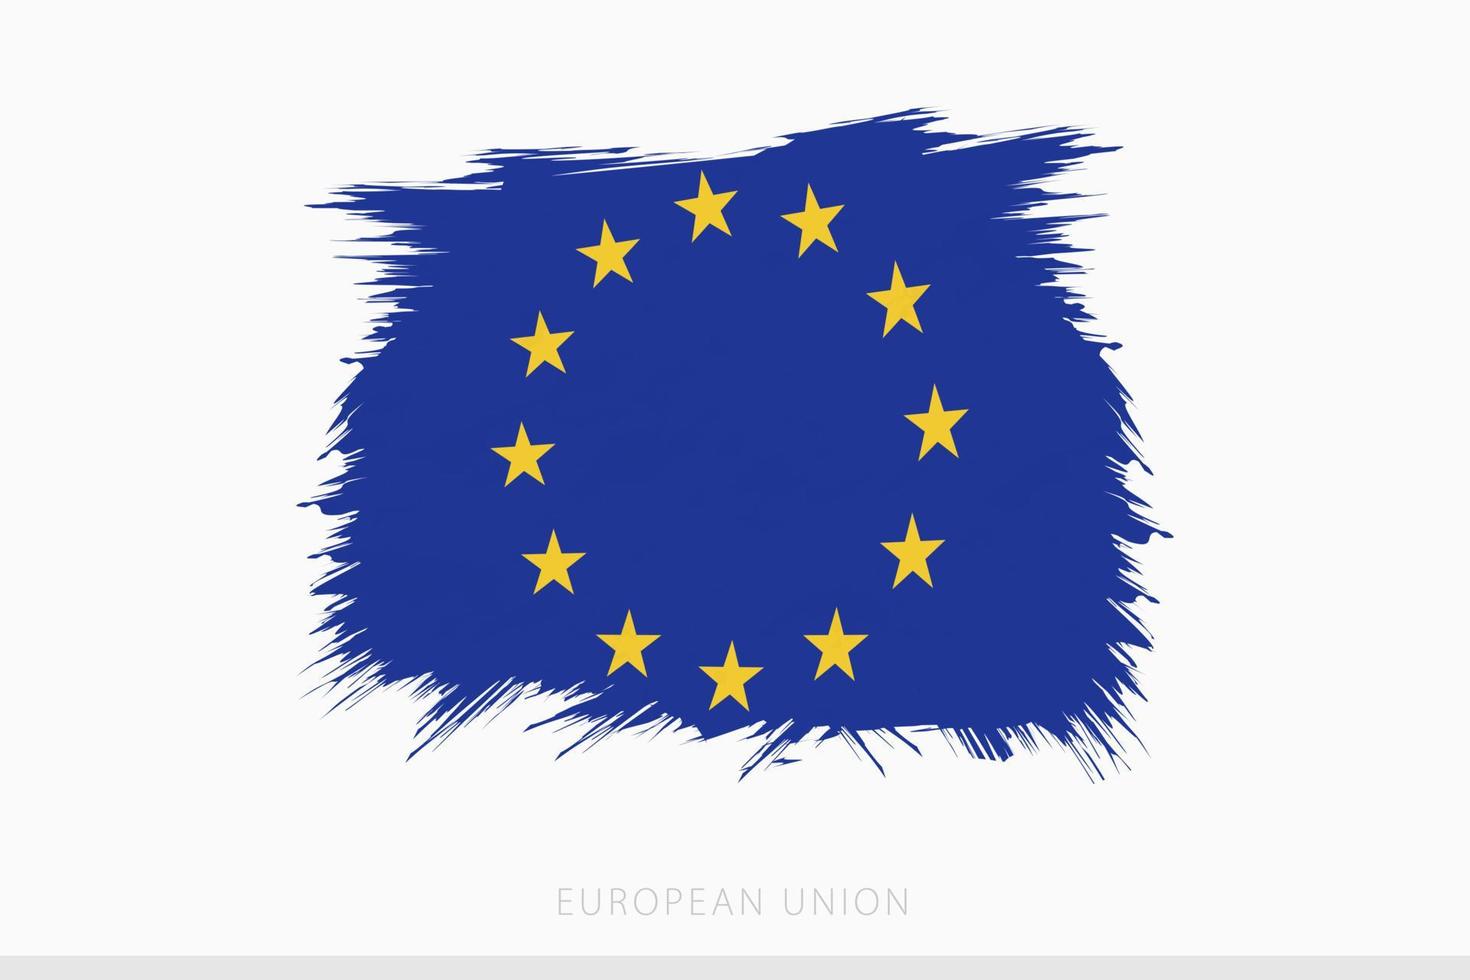 grunge bandera de europeo Unión, vector resumen grunge cepillado bandera de europeo Unión.